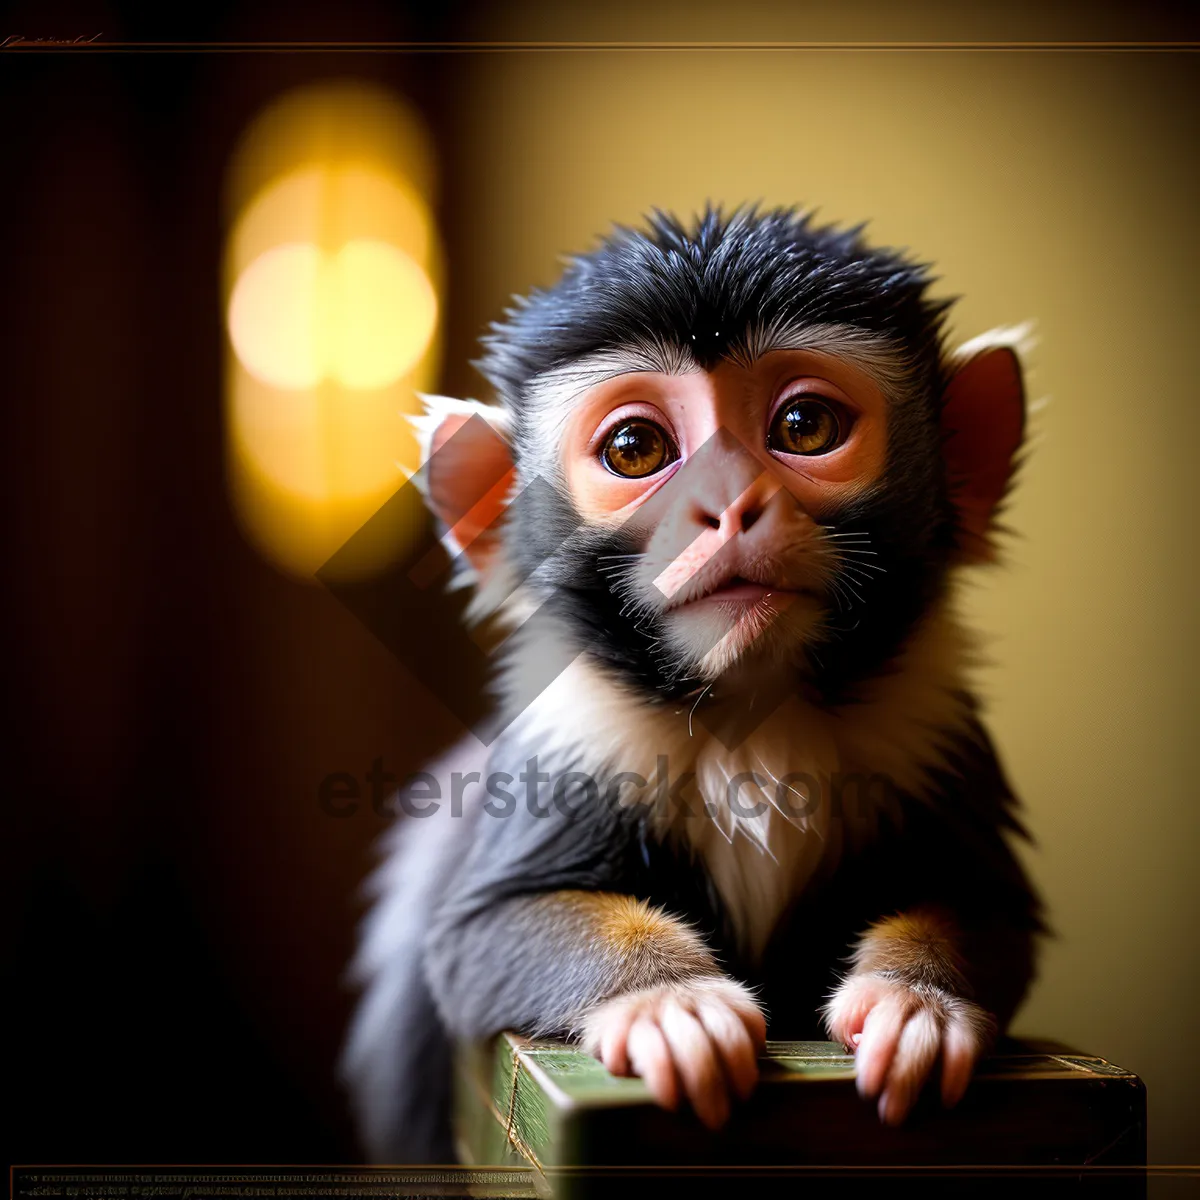 Picture of Cute Primate Face in Wild Jungle